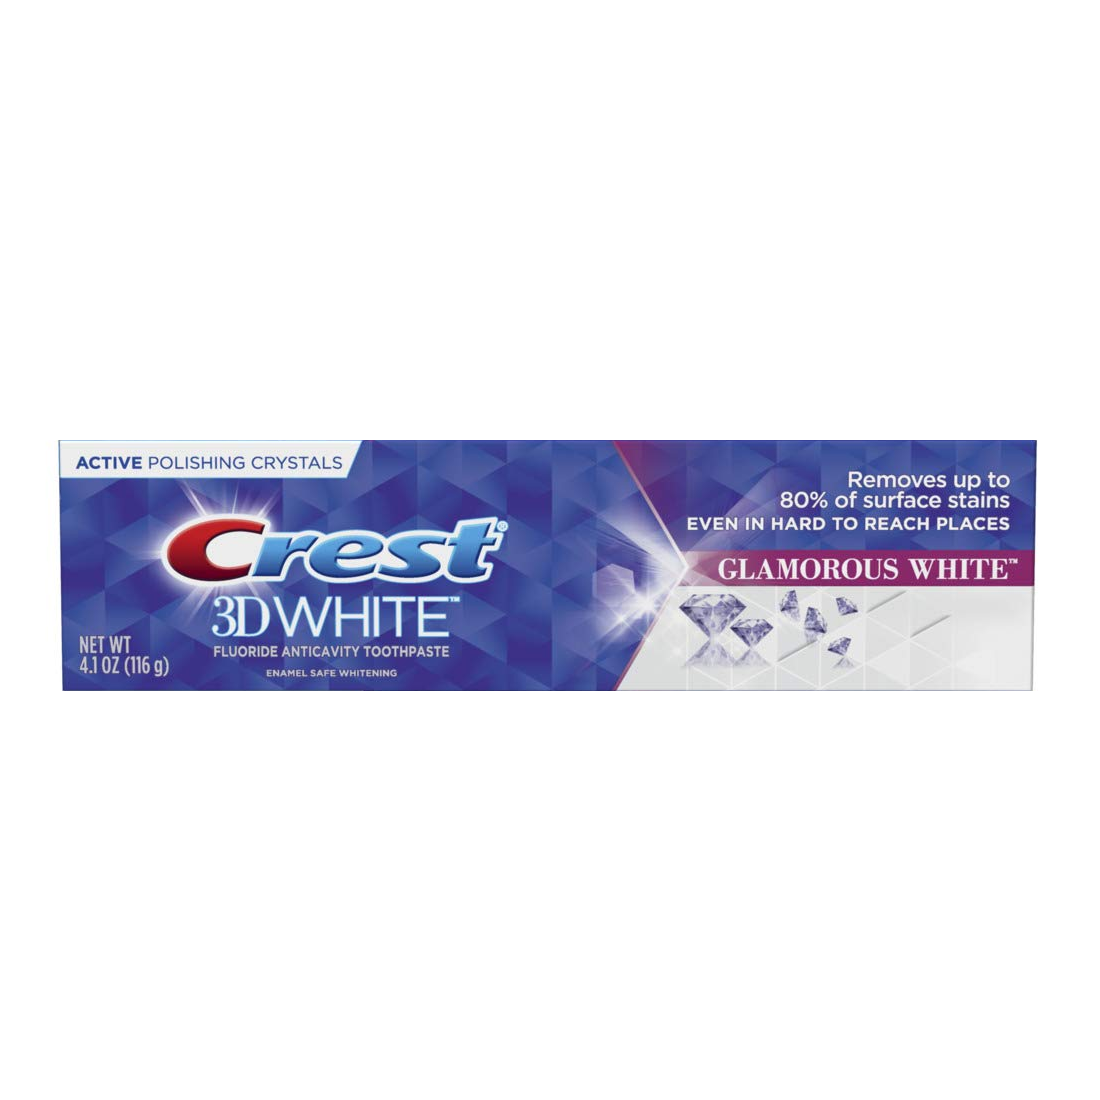 Crest Toothpaste 3D White Glamorous White, 4.1 oz